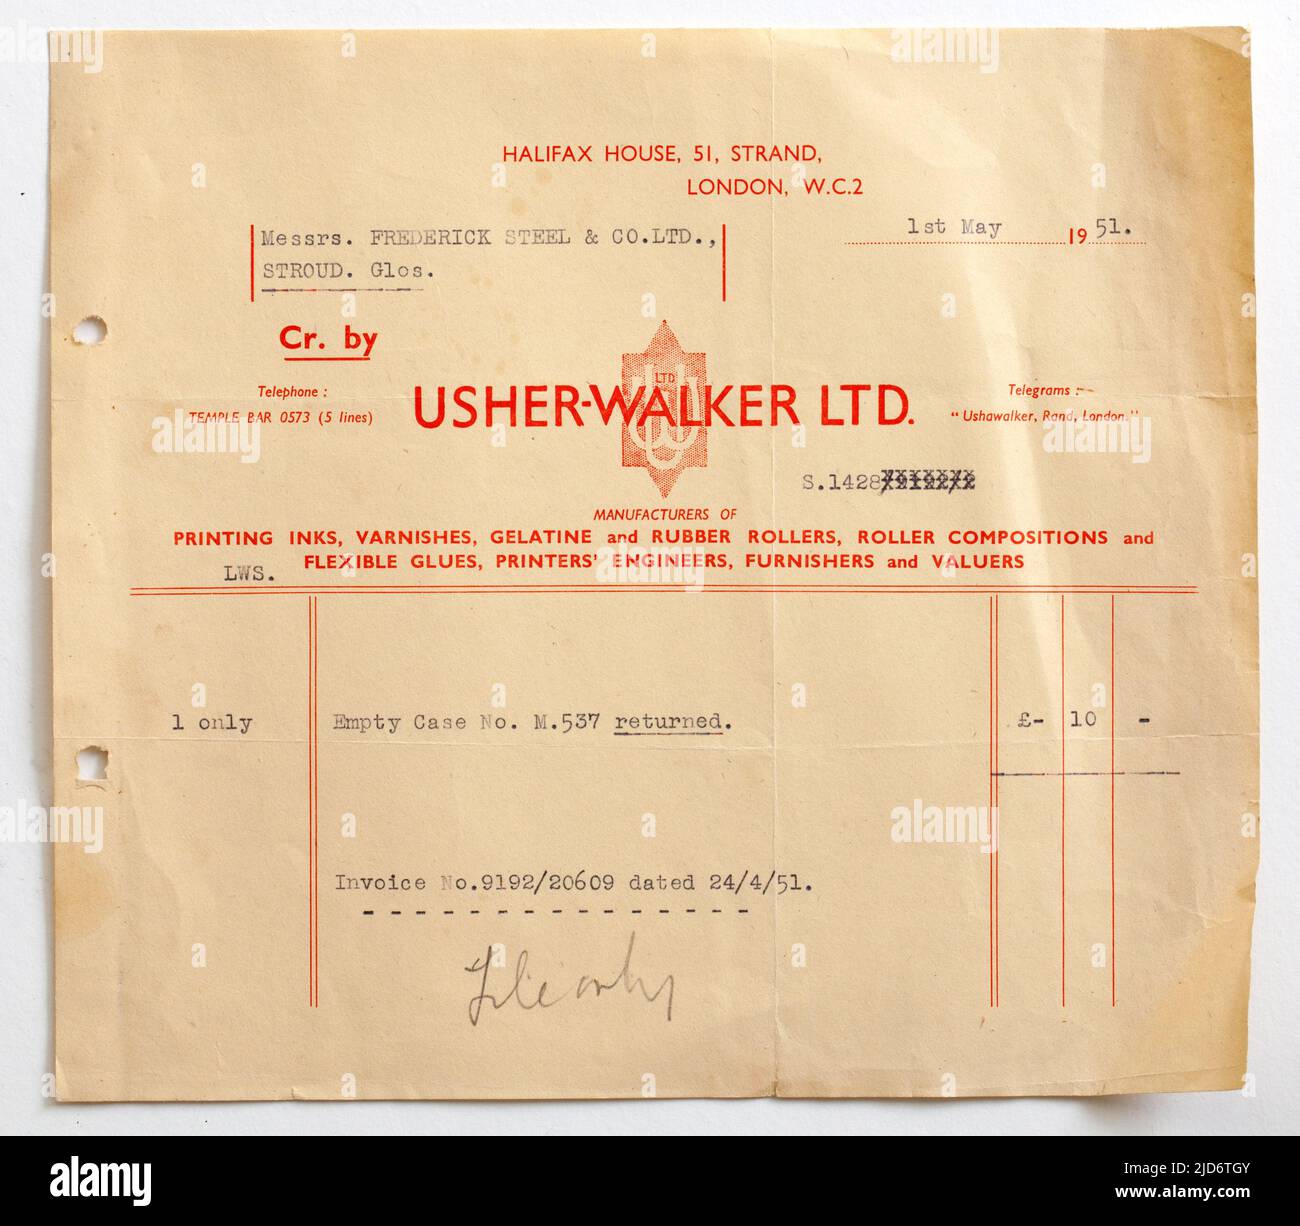 1950s reçu de la facture des ventes commerciales pour les fournitures de Usher Walker Ltd Banque D'Images